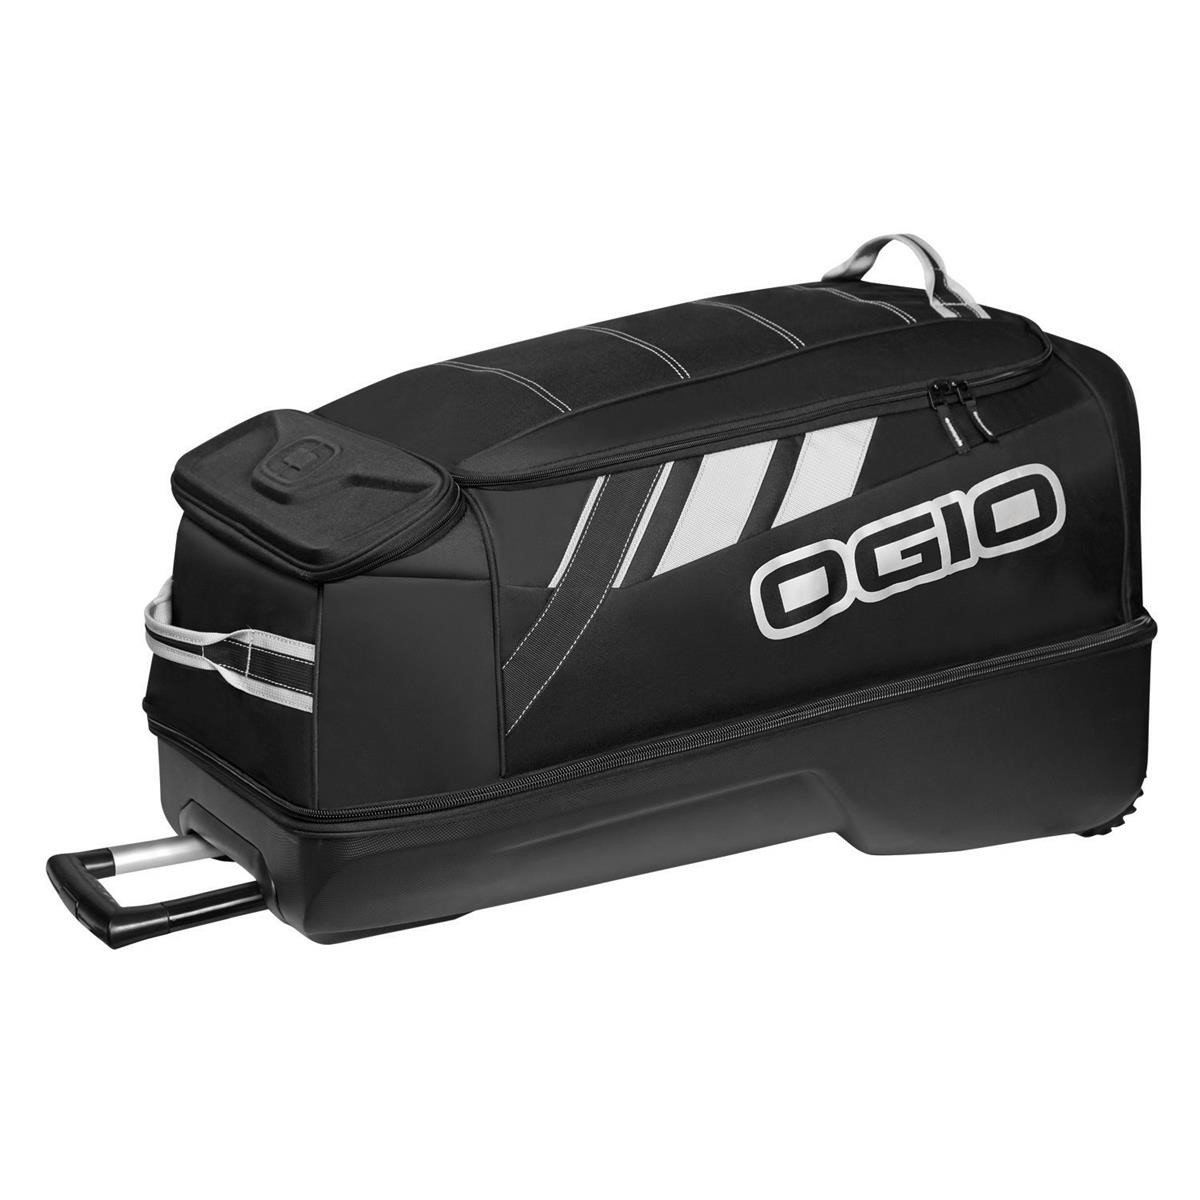 Ogio Travel Bag Adrenaline Wheel Bag Stealth/Black, 108 Liter